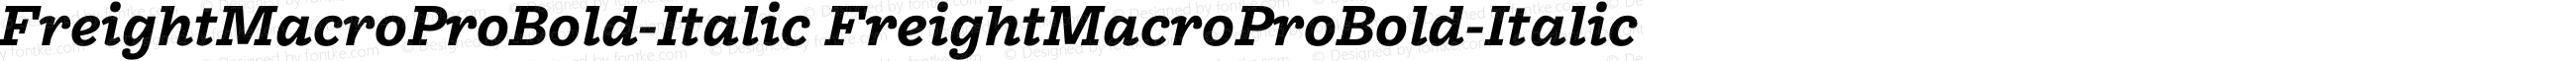 FreightMacroProBold-Italic